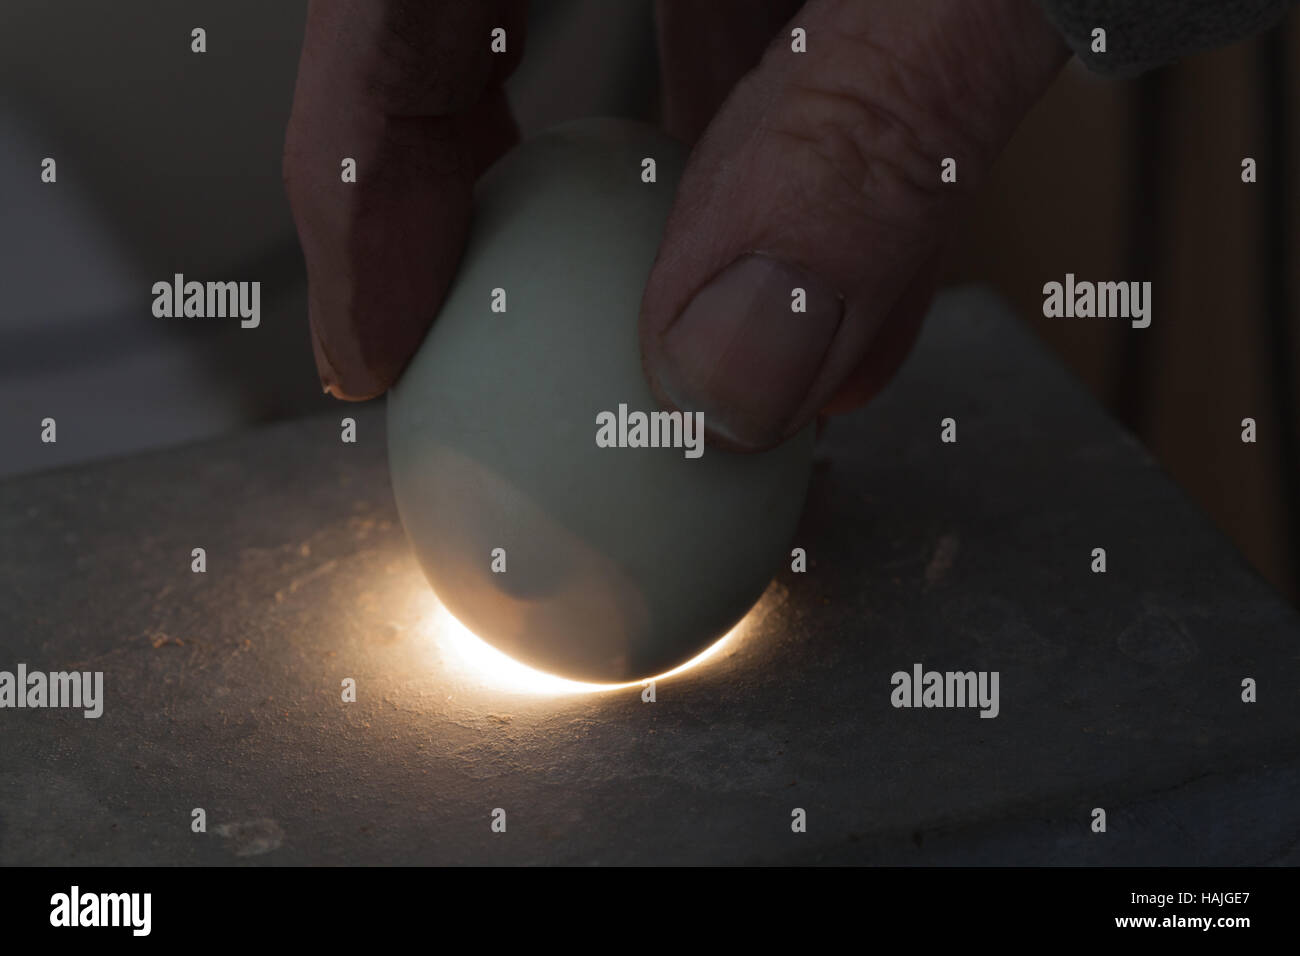 Uovo di uccello, una essendo candled oltre una sorgente di luce. Bill o punta a becco del pulcino possono essere ravvisati entro lo spazio d'aria presso l'estremità larga dell'uovo Foto Stock